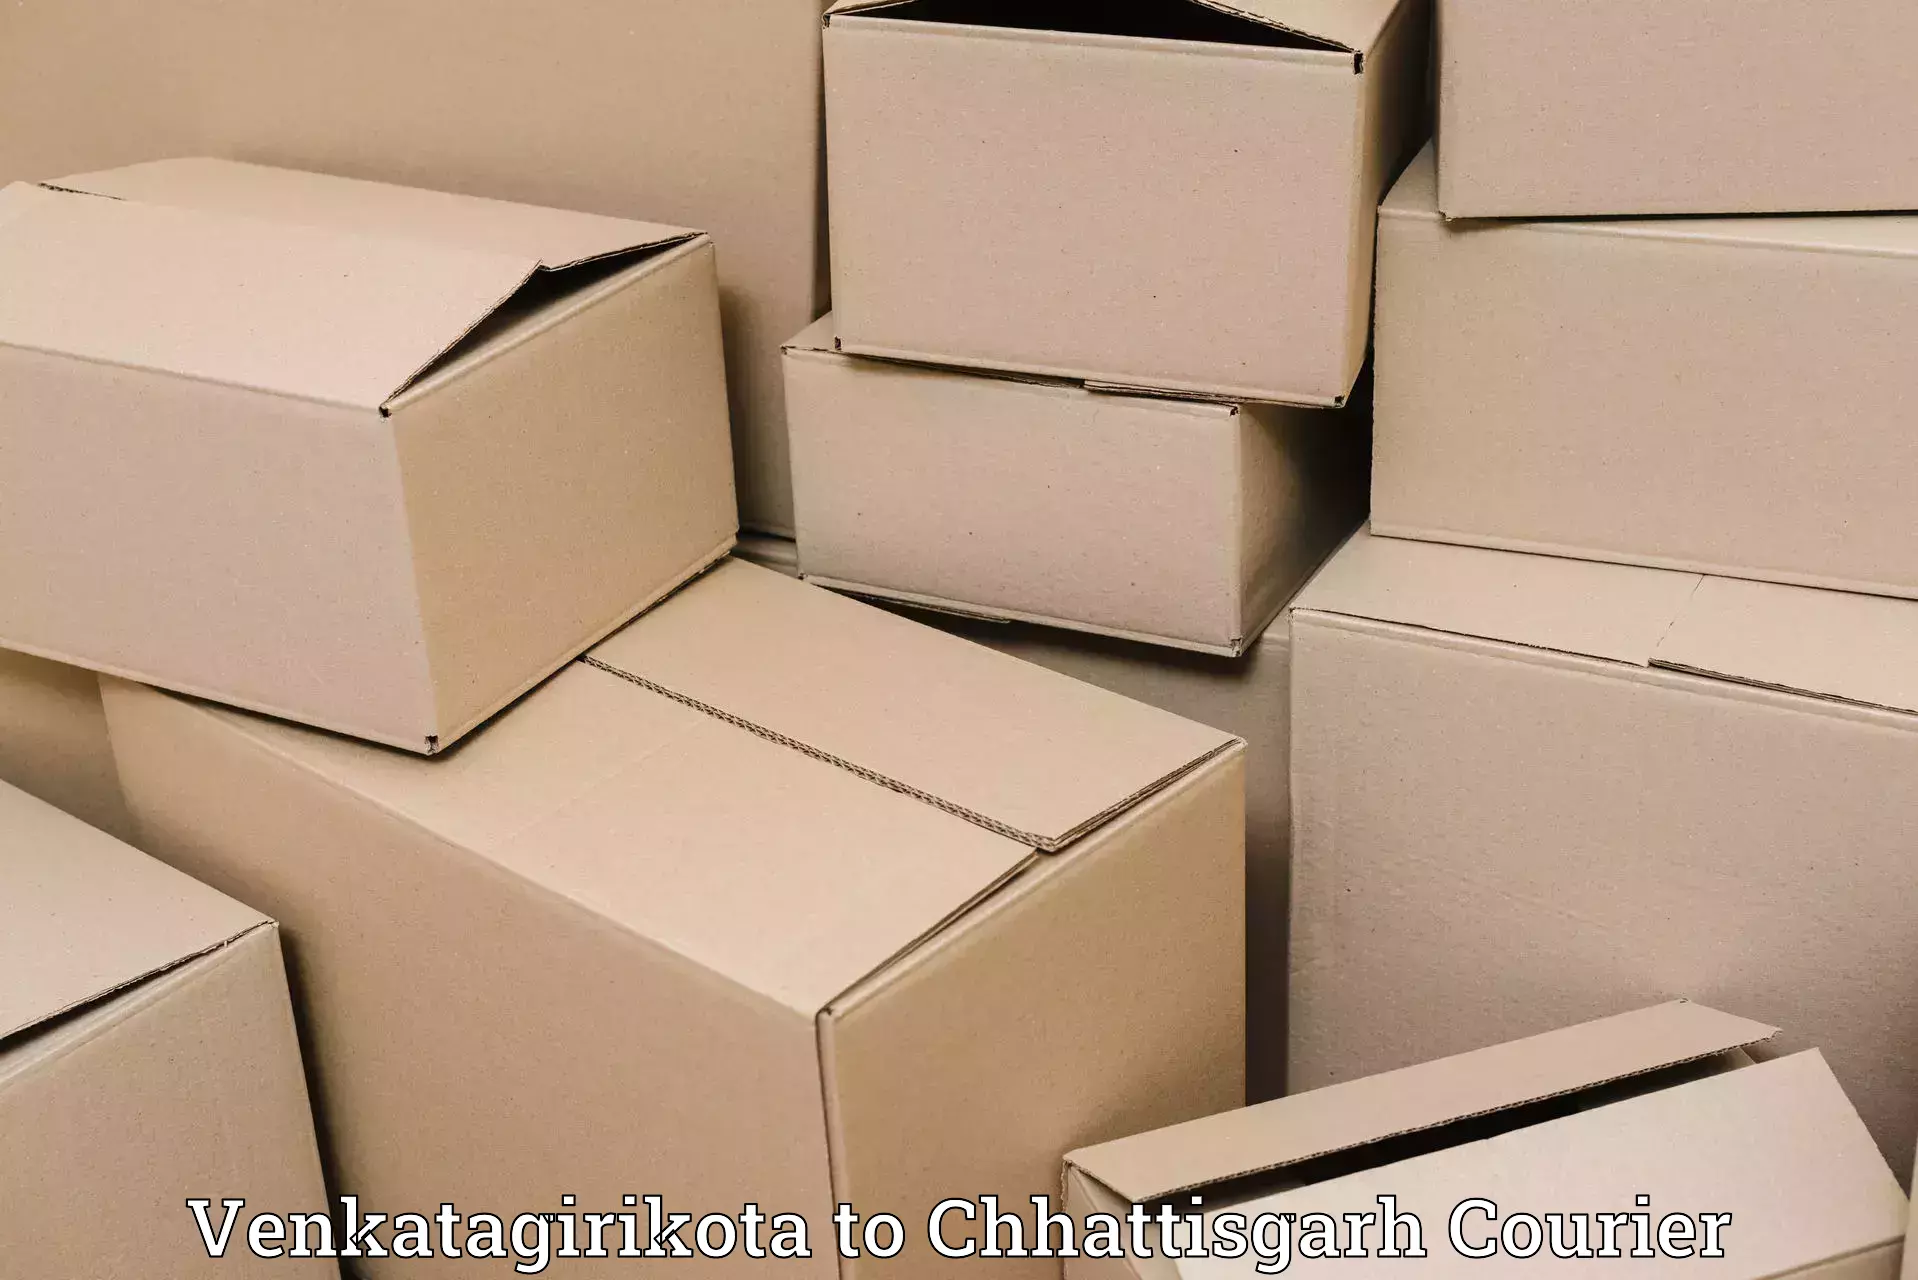 Luggage delivery logistics Venkatagirikota to Chhattisgarh